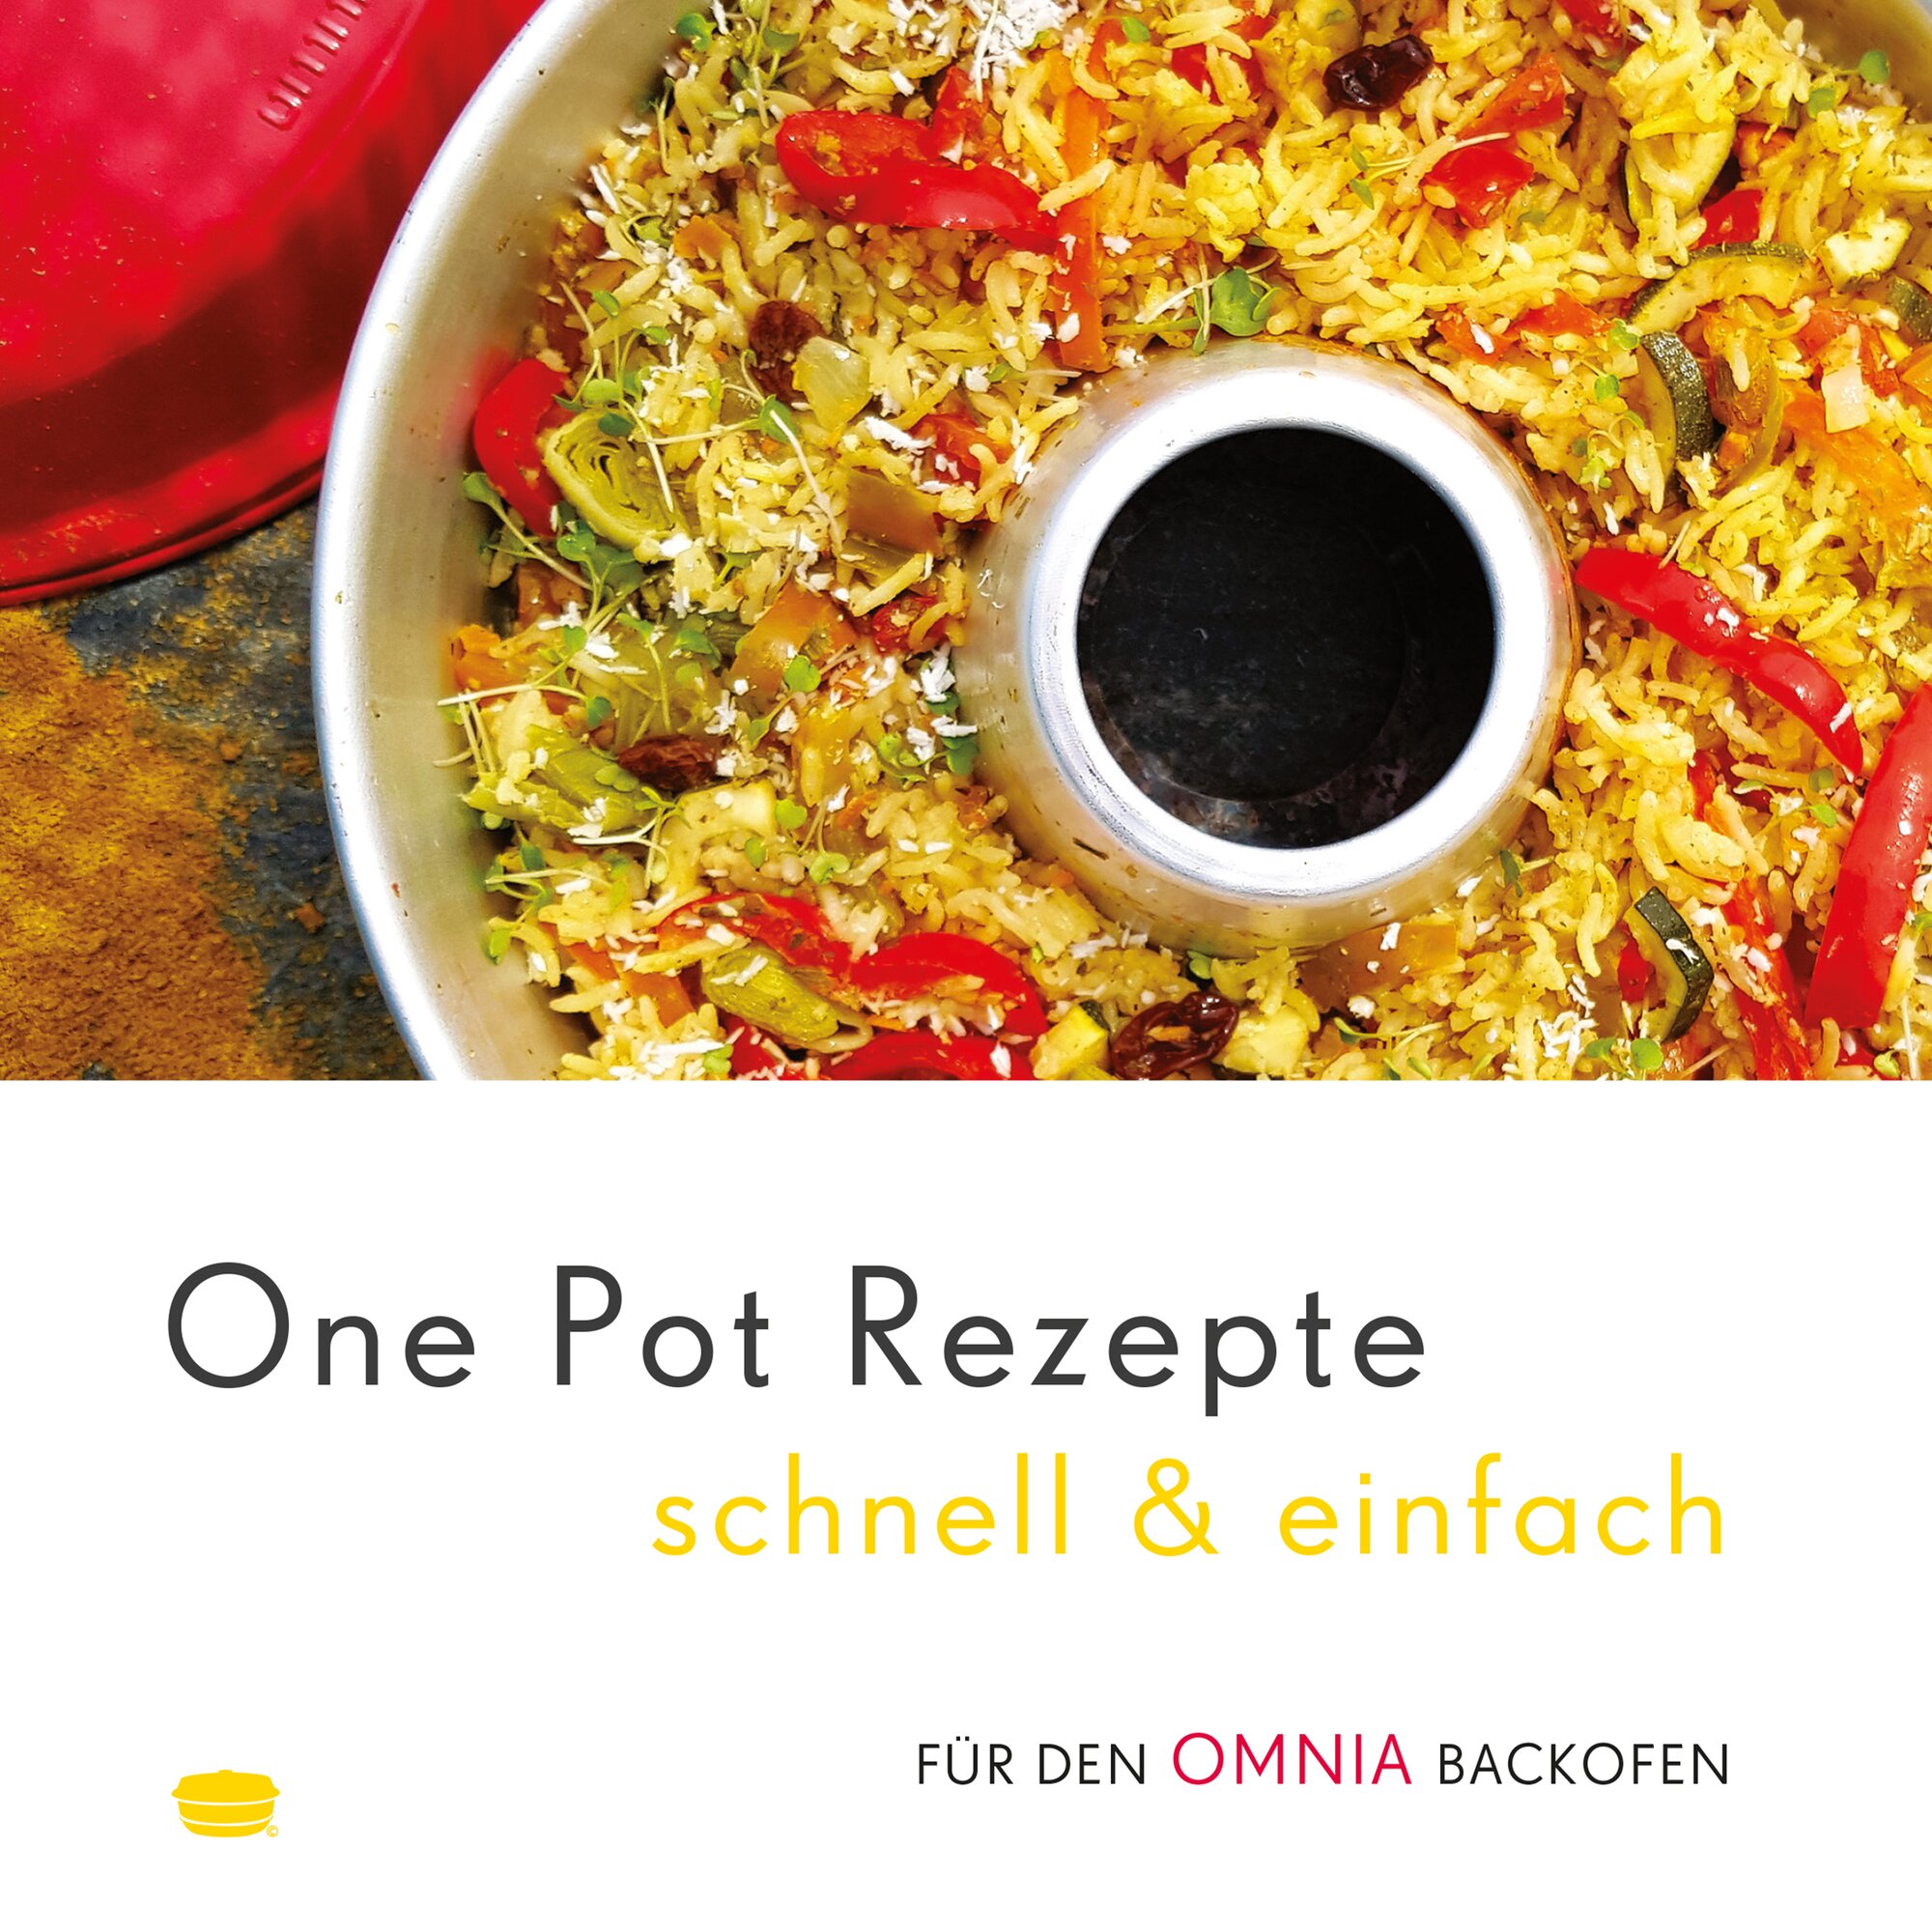 One Pot Rezepte schnell & einfach – Rezepte für den Omnia Backofen – Kochbuch